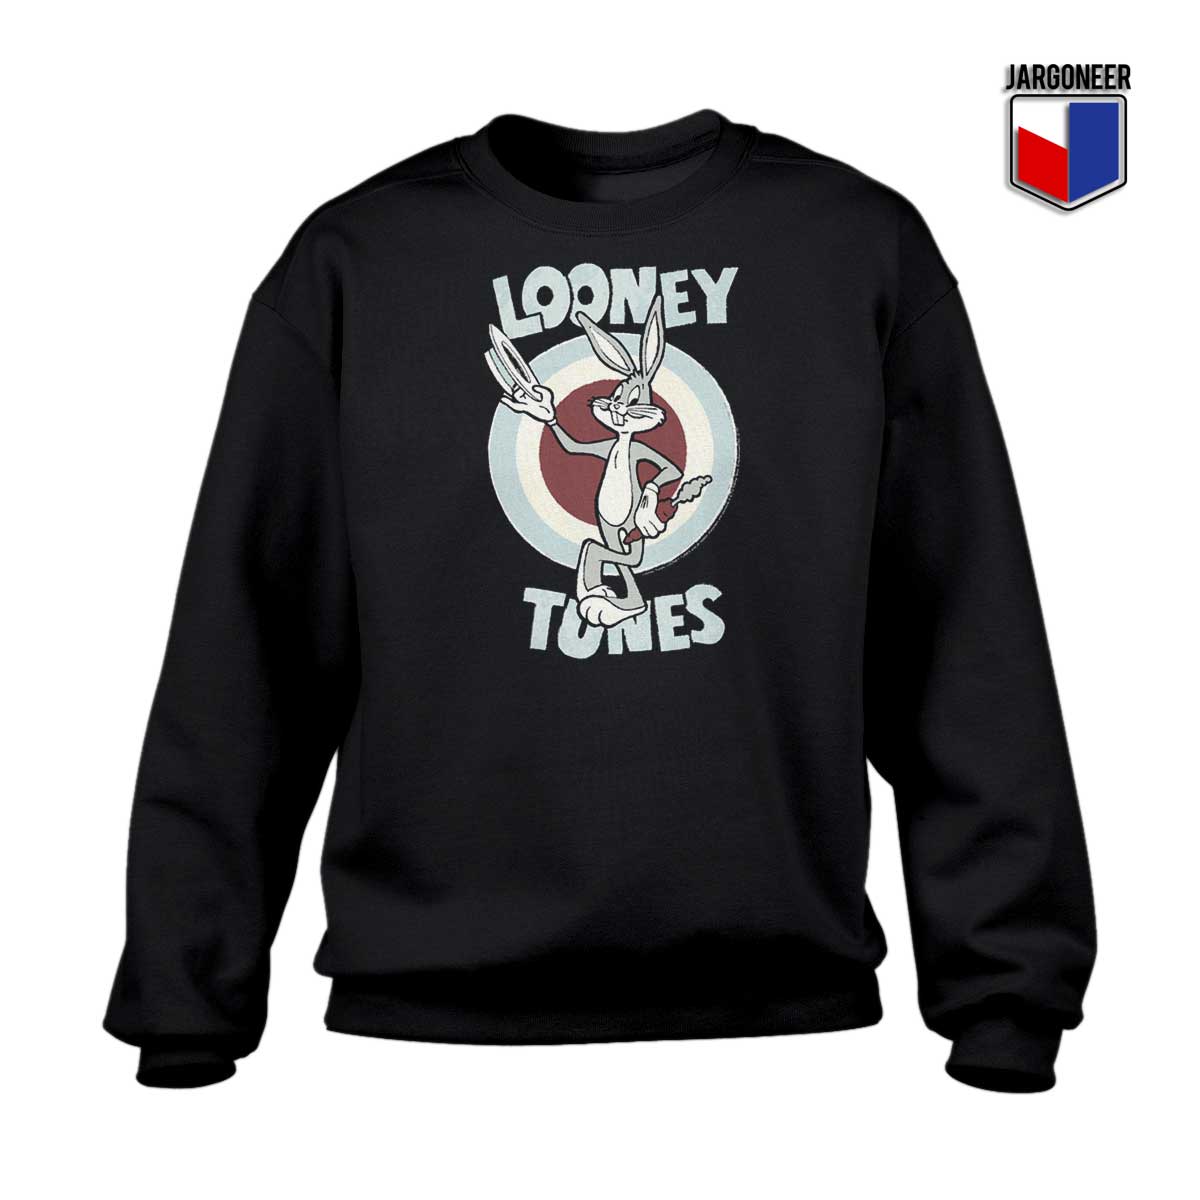 Bunny Looney Tunes Sweatshirt - Shop Unique Graphic Cool Shirt Designs